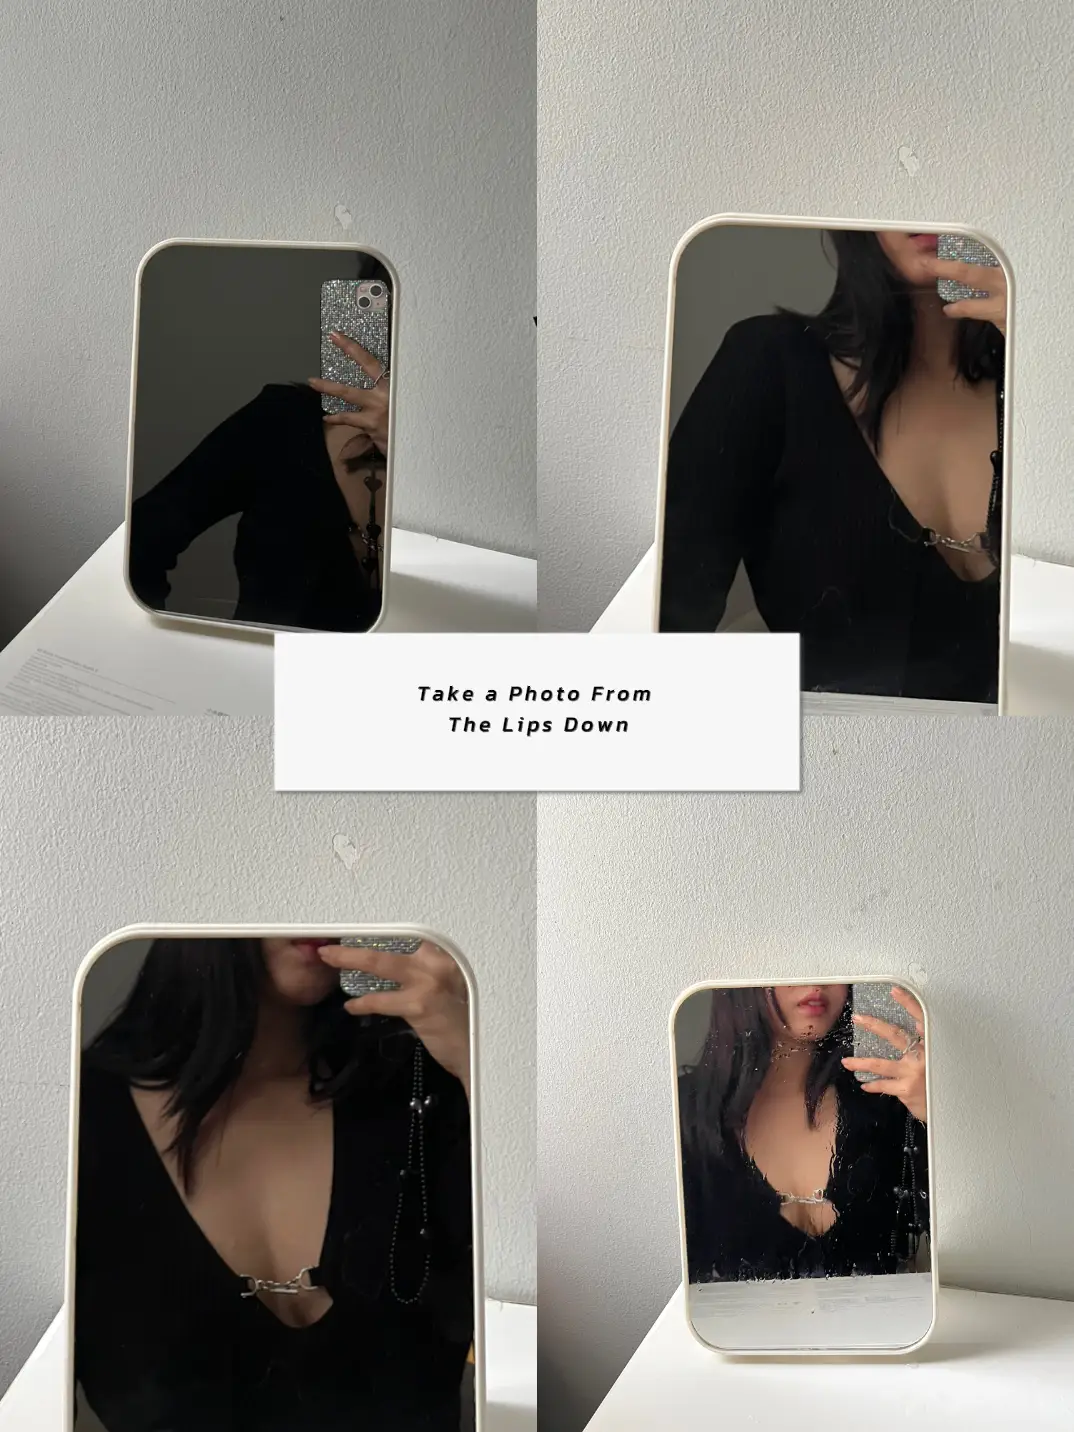 aesthetic✨  Instagram profile picture ideas, Mirror selfie poses